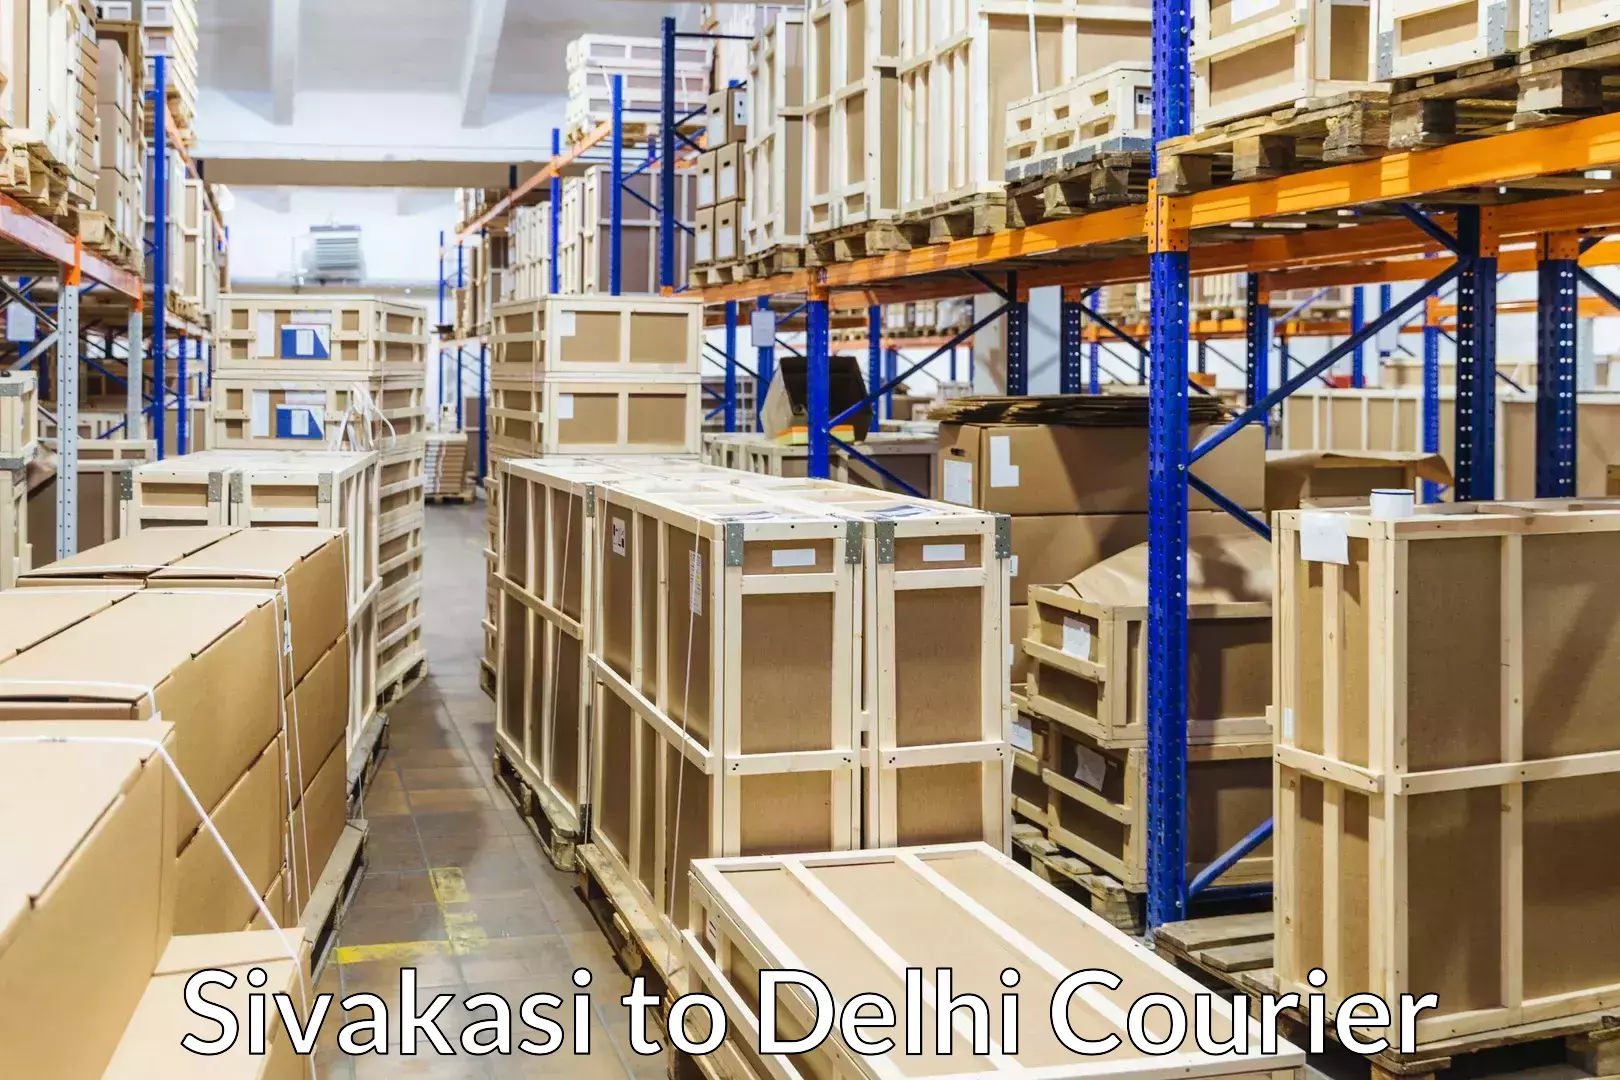 Skilled furniture movers Sivakasi to Jawaharlal Nehru University New Delhi